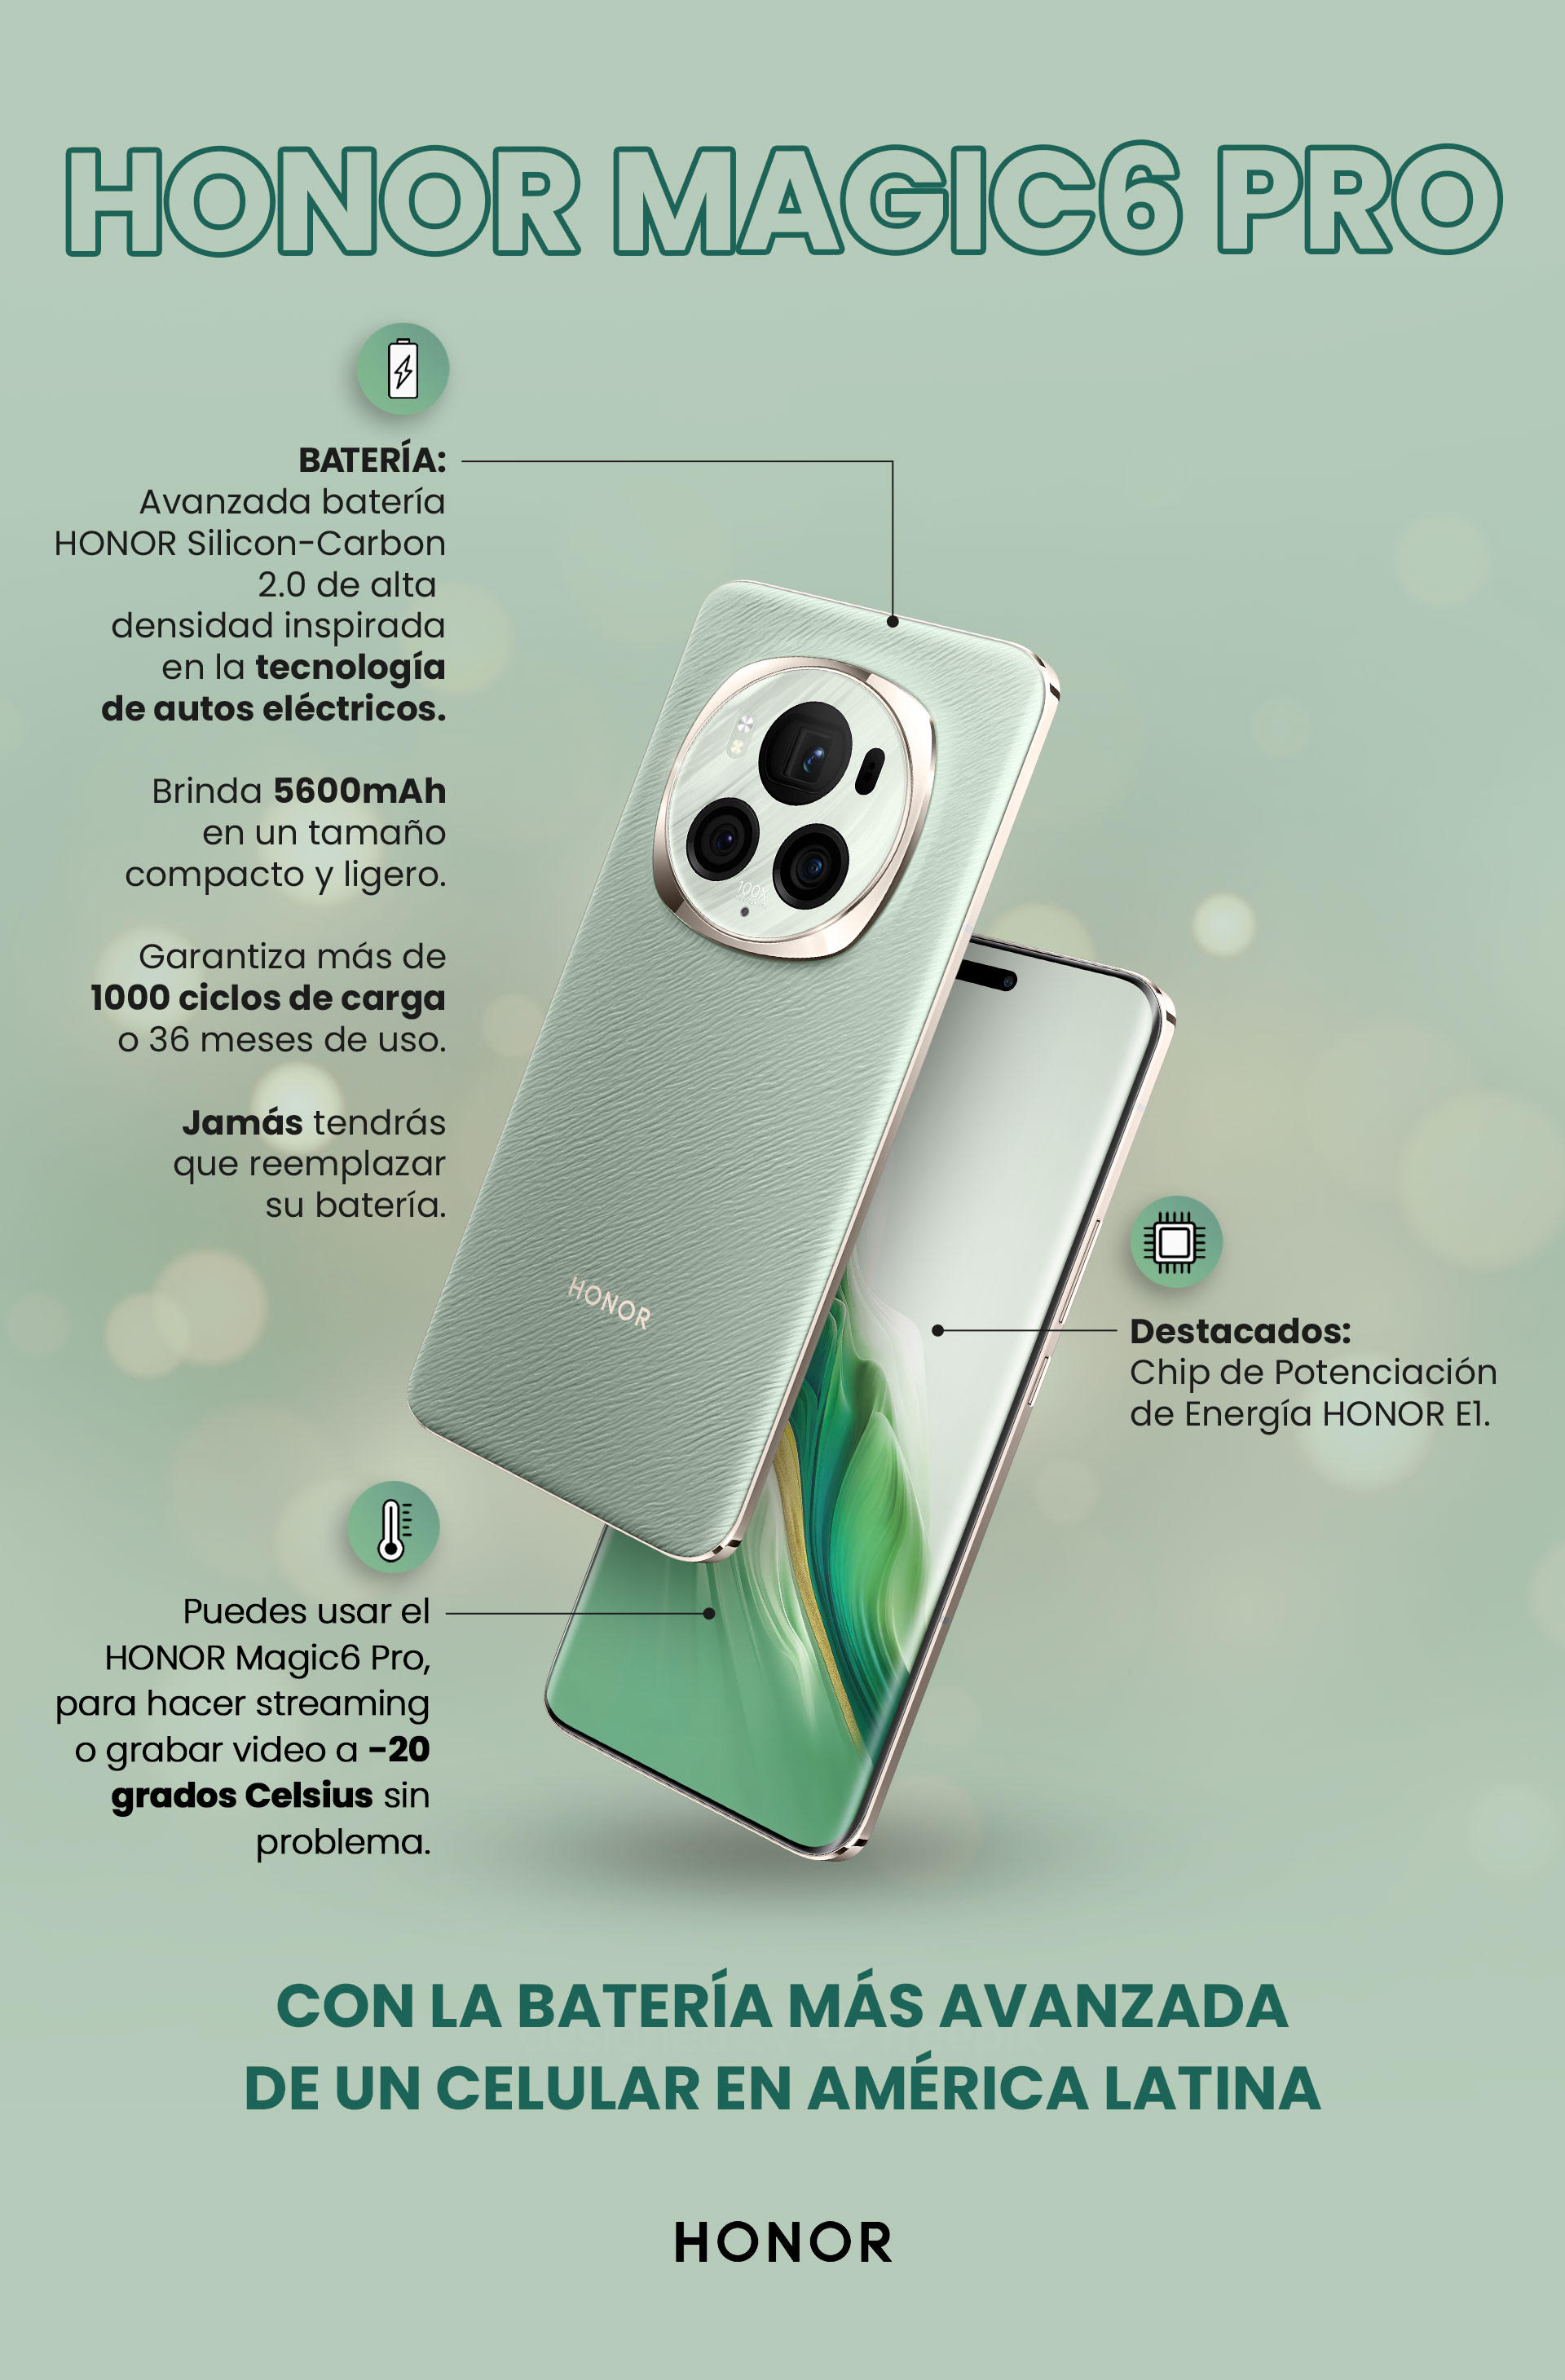 HONOR presenta la batería más avanzada en un smartphone en todo América Latina con su último lanzamiento, el HONOR Magic6 Pro